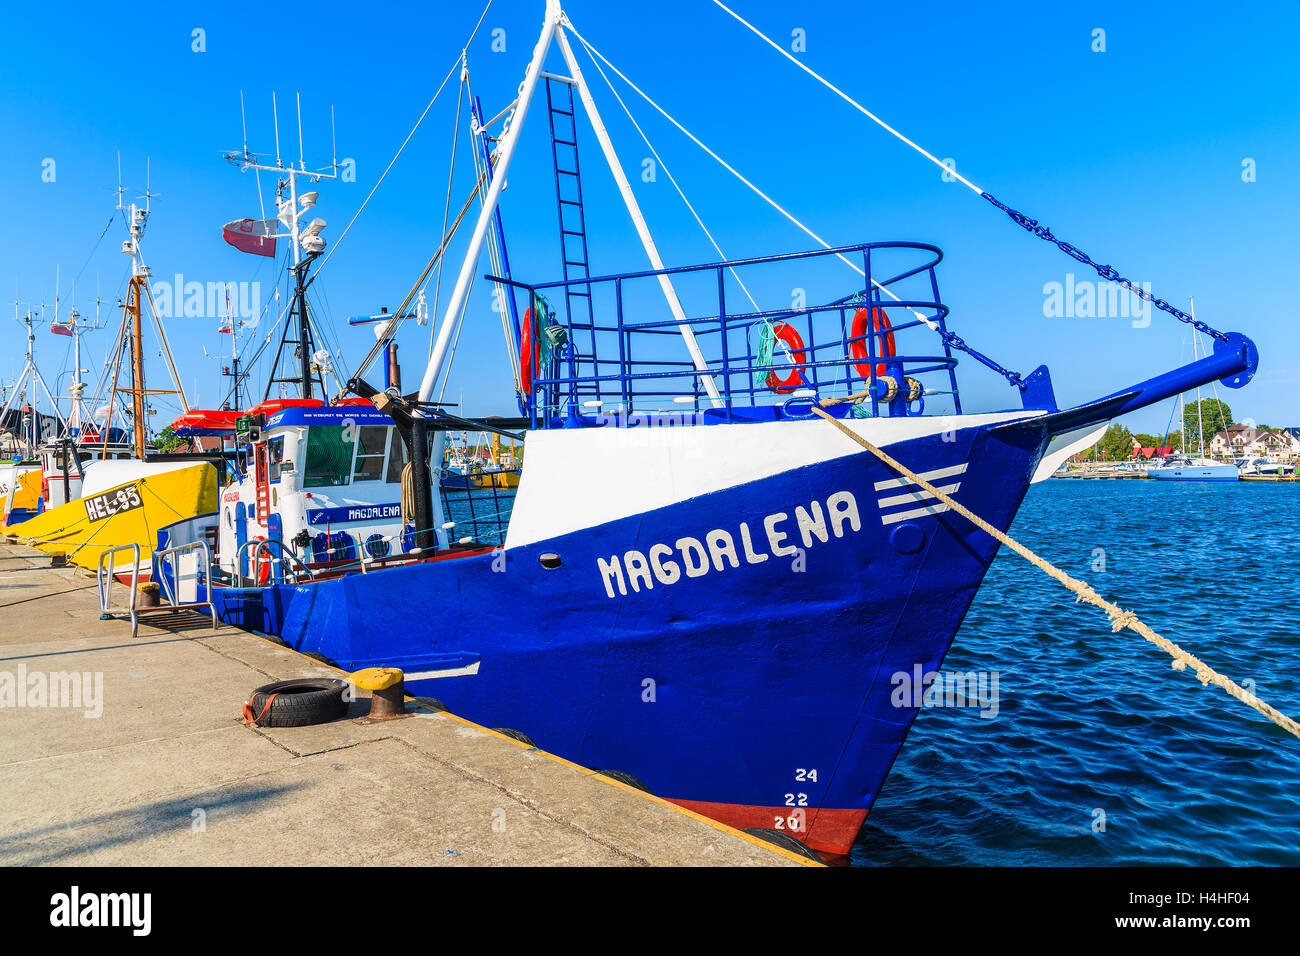 Porta JASTARNIA, Polonia - giu 21, 2016: barche da pesca in Jastarnia porta sulla penisola di Hel, Mar Baltico, Polonia. La pesca è così importante Foto Stock